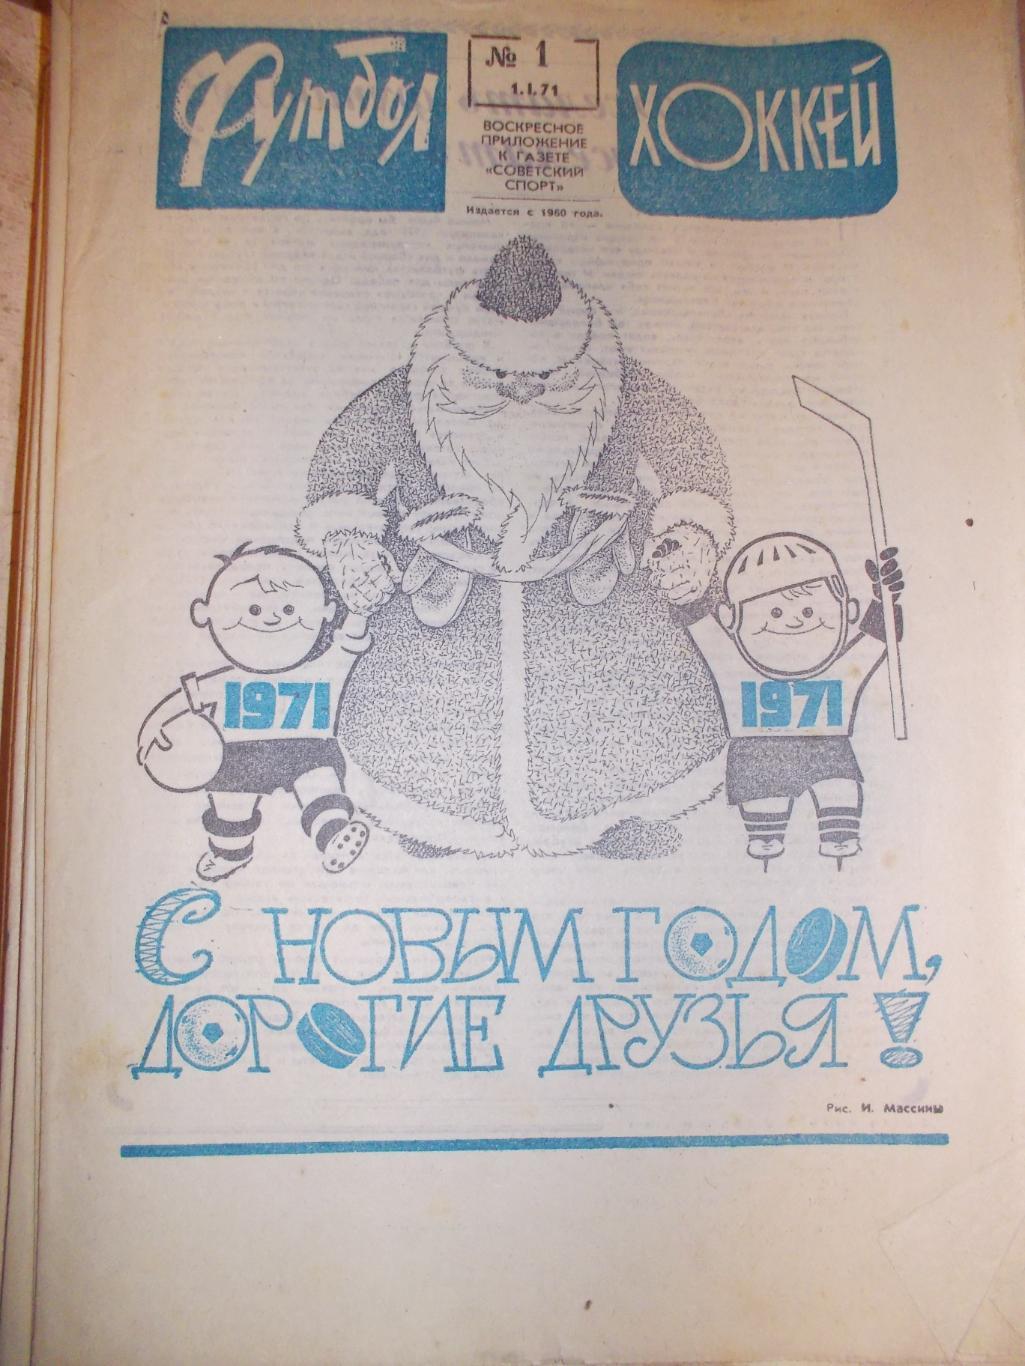 Еженедельник Футбол-Хоккей,1971 полный комплект. + 5 программ на выбор с фото.